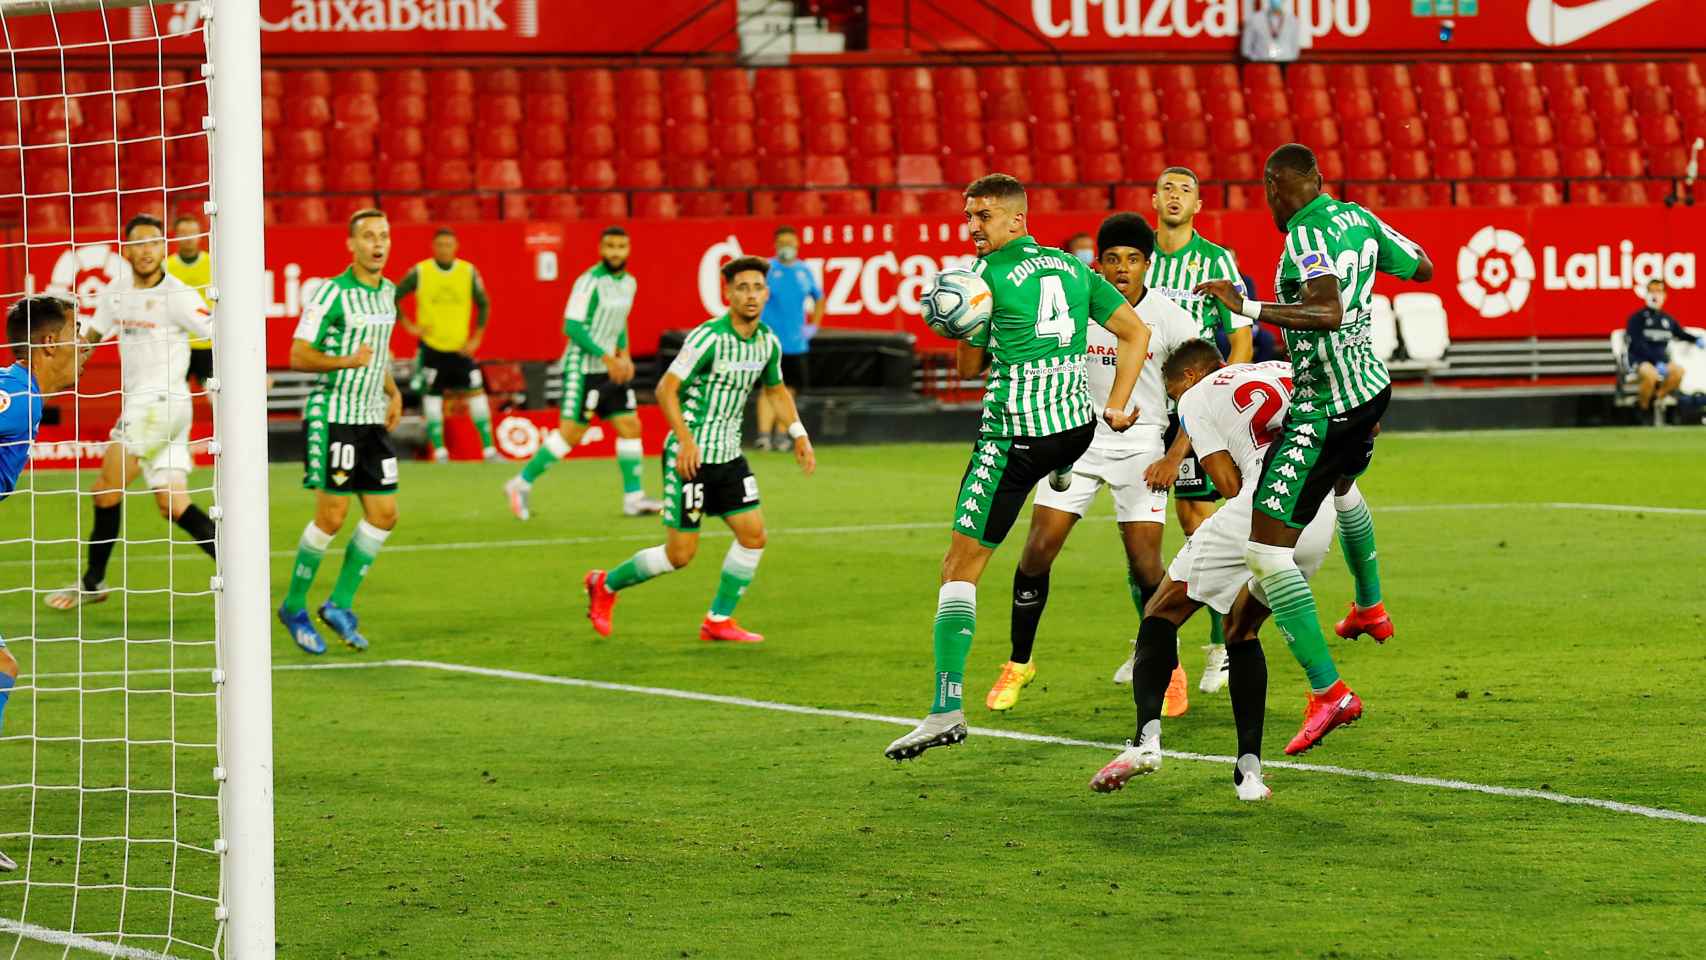 Gol de Fernando de cabeza para poner el 2-0 en el Sevilla - Betis